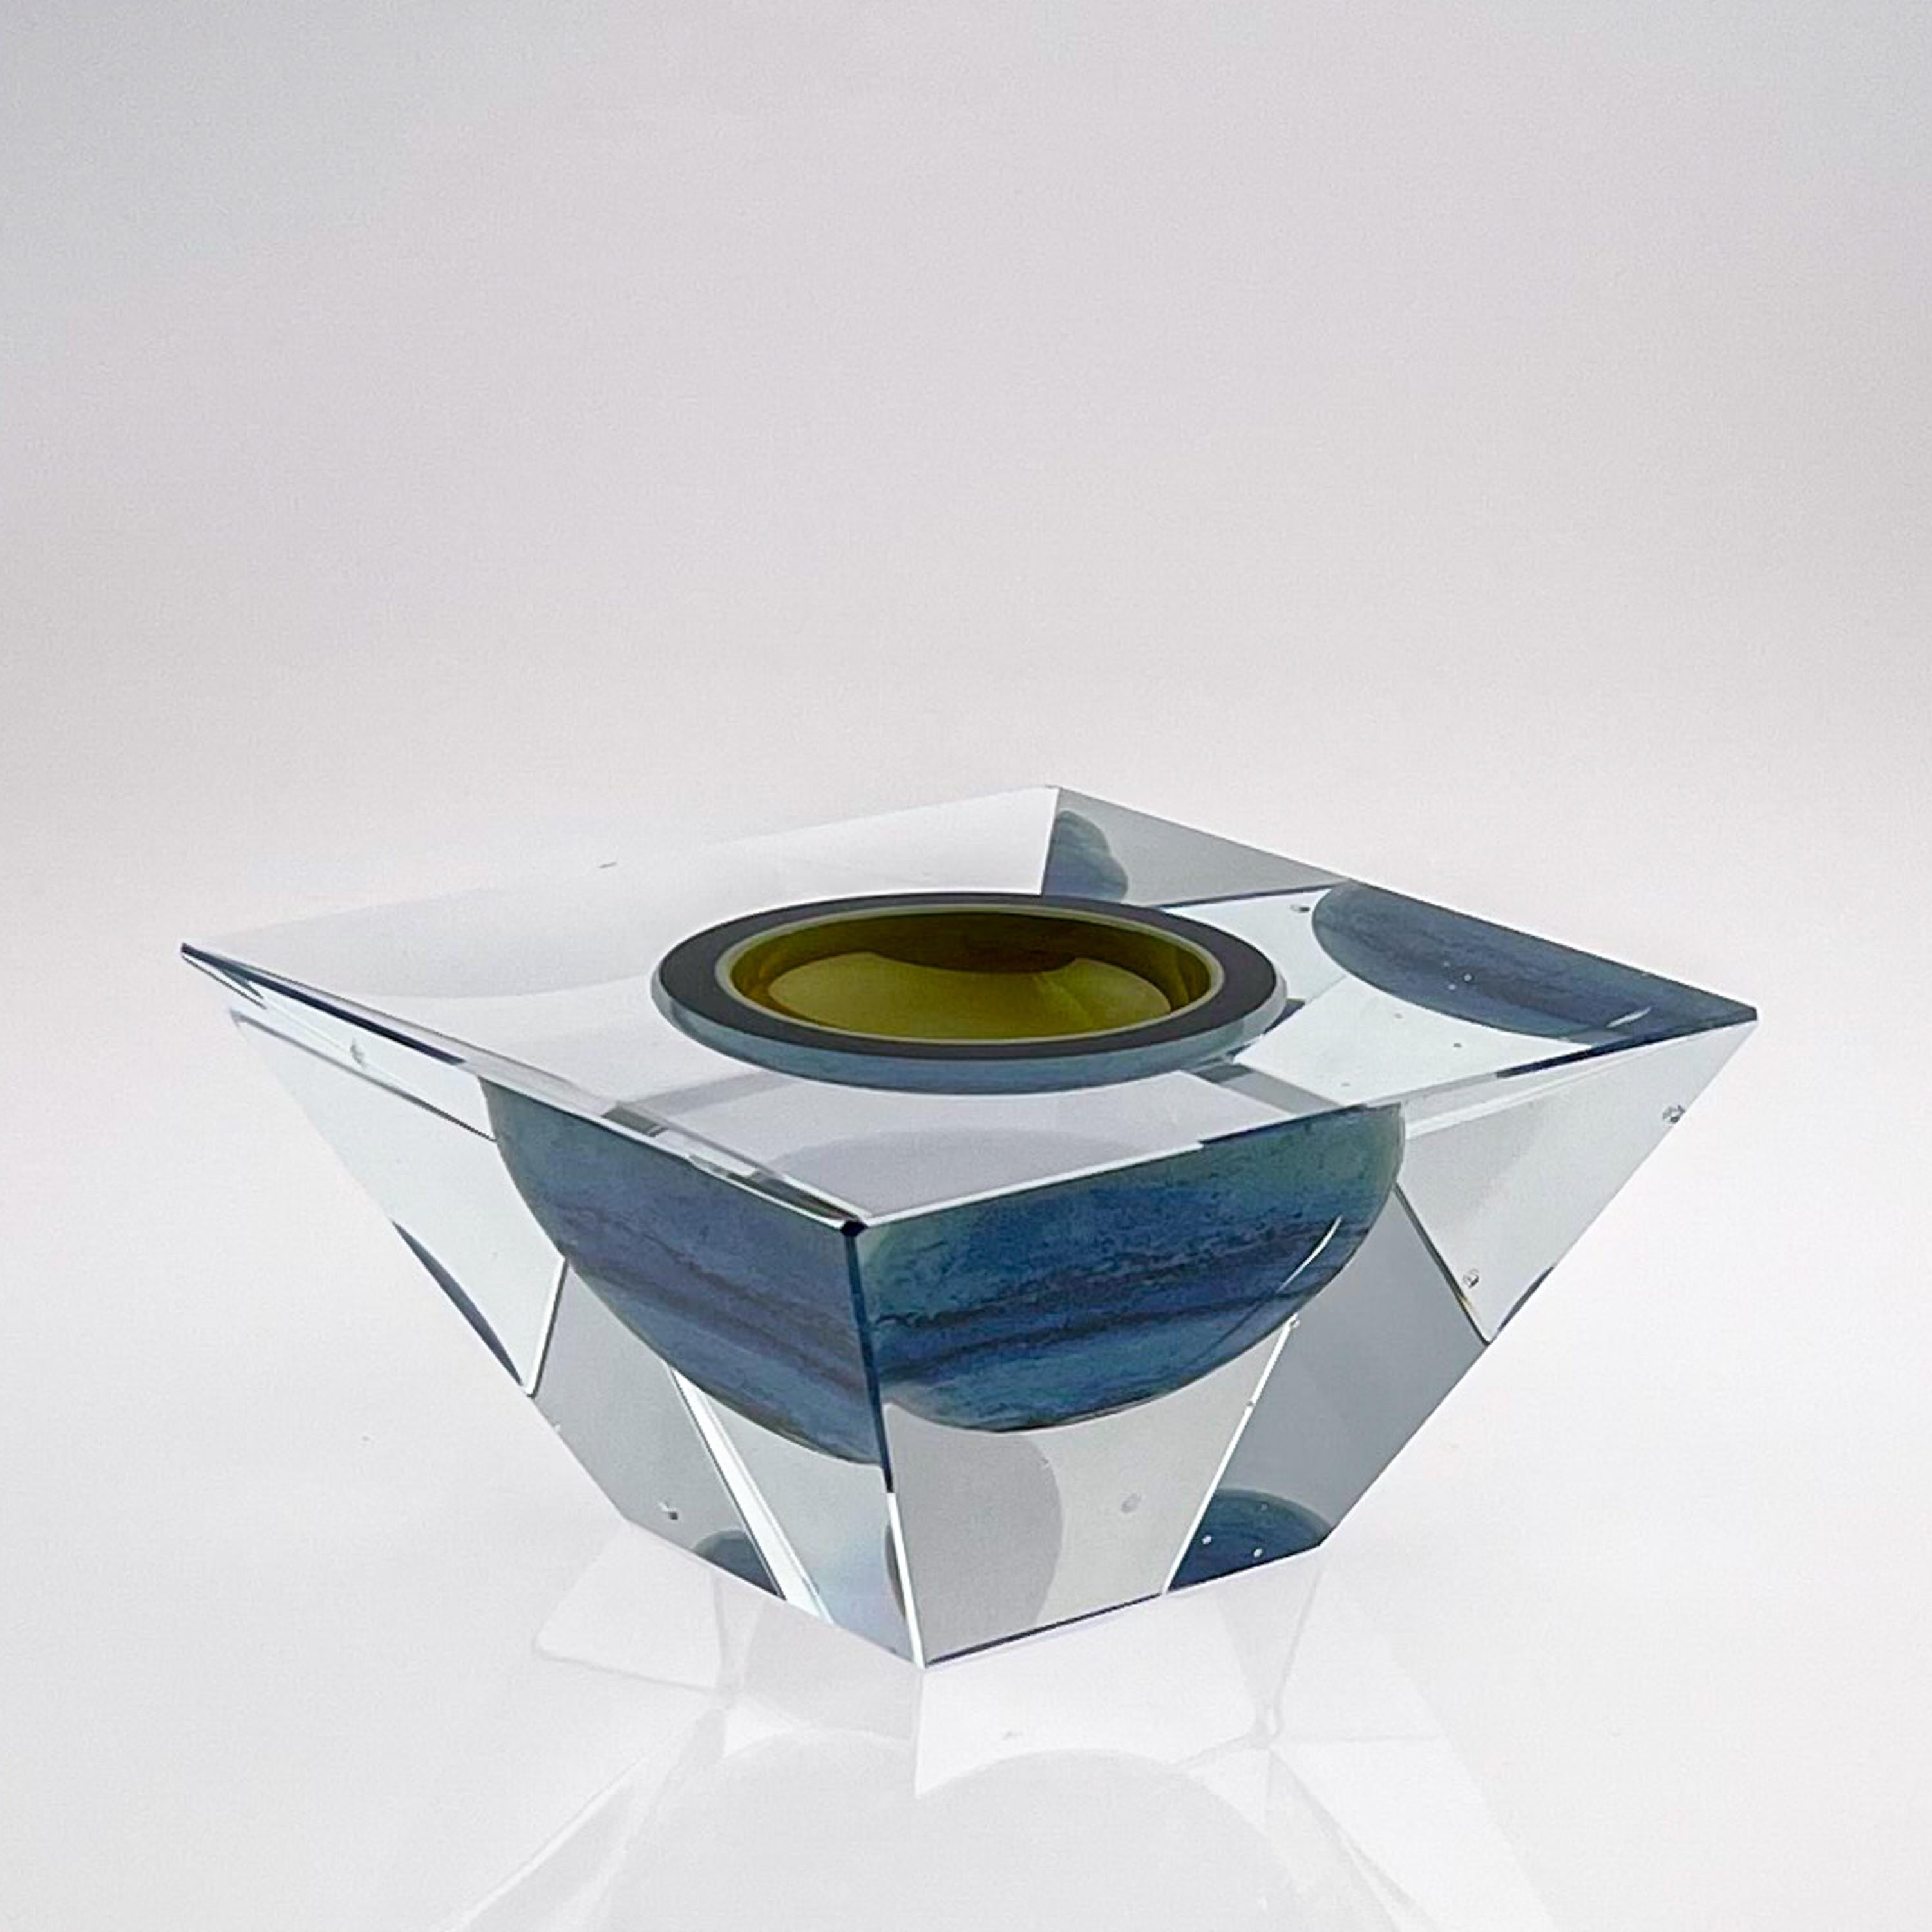 Sculpture d'art scandinave moderne en cristal soufflé à la bouche Tear de Timo Sarpaneva, 1955

Objet d'art en verre soufflé, moulé et découpé, modèle 3101. Conçu par Oiva Toikka en 1990 et fabriqué à la main par les artisans de la verrerie de